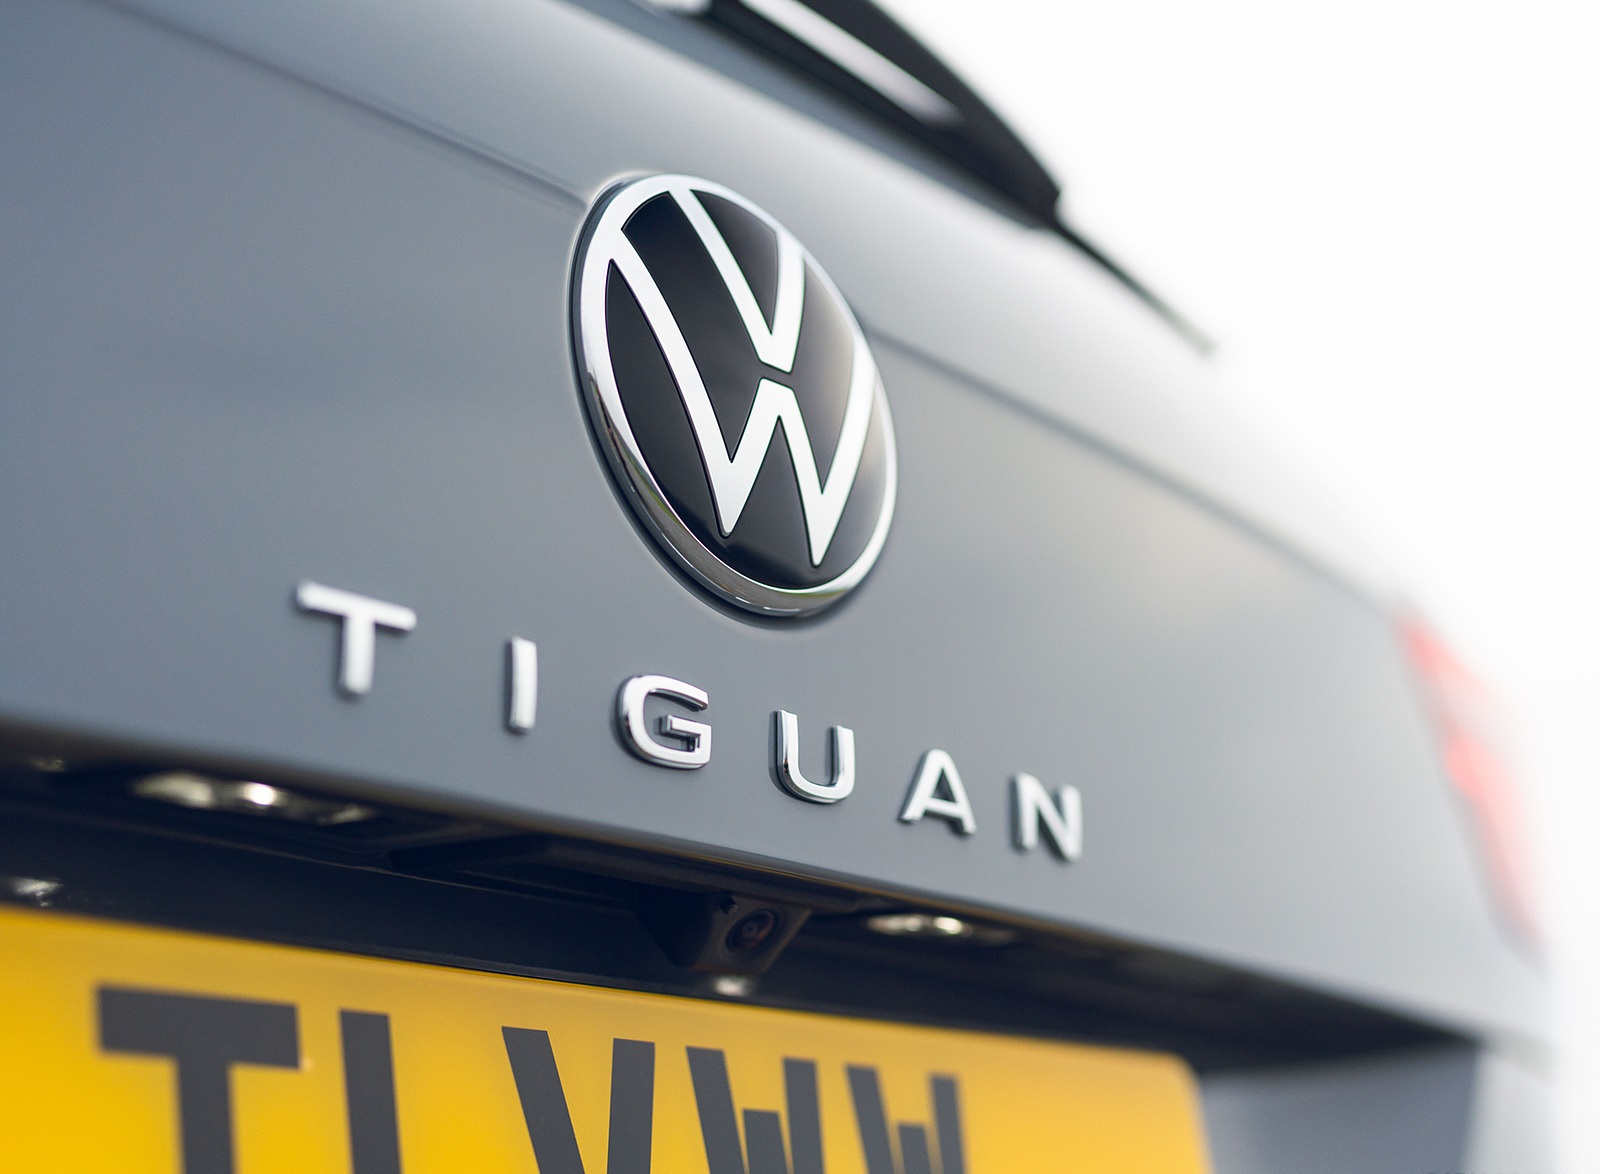 2021 Volkswagen Tiguan Life (UK-Spec) Badge Wallpapers #52 of 84